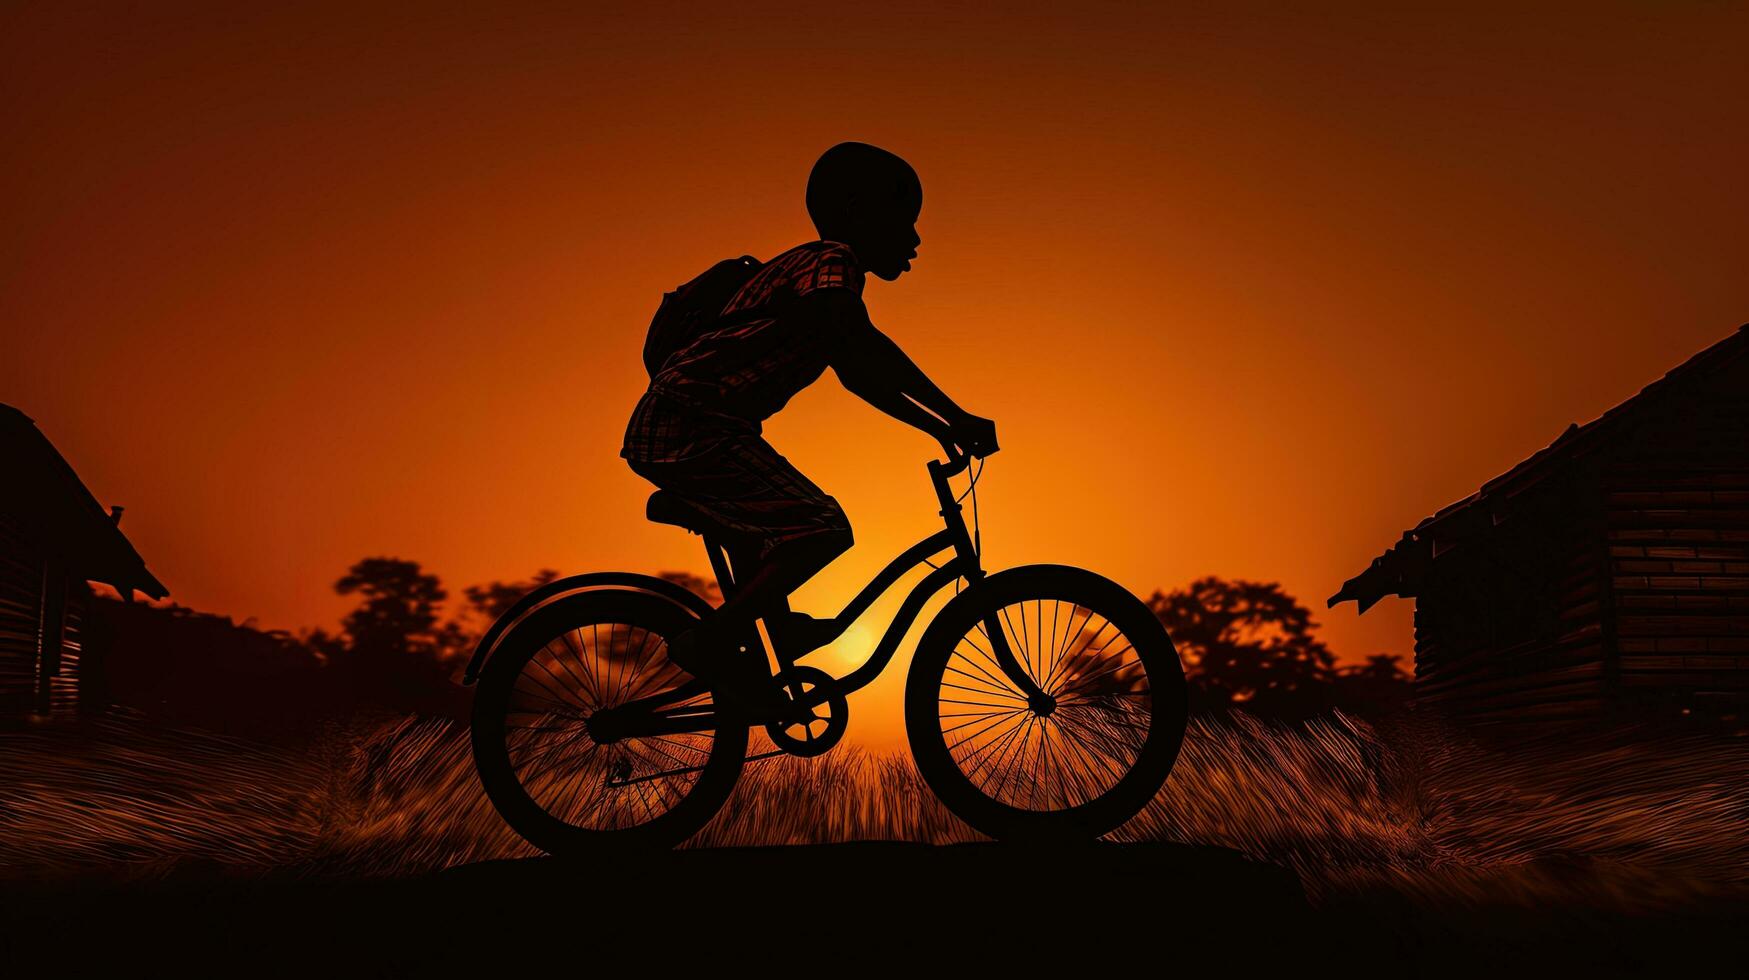 pojke på cykel för kondition silhuett foto